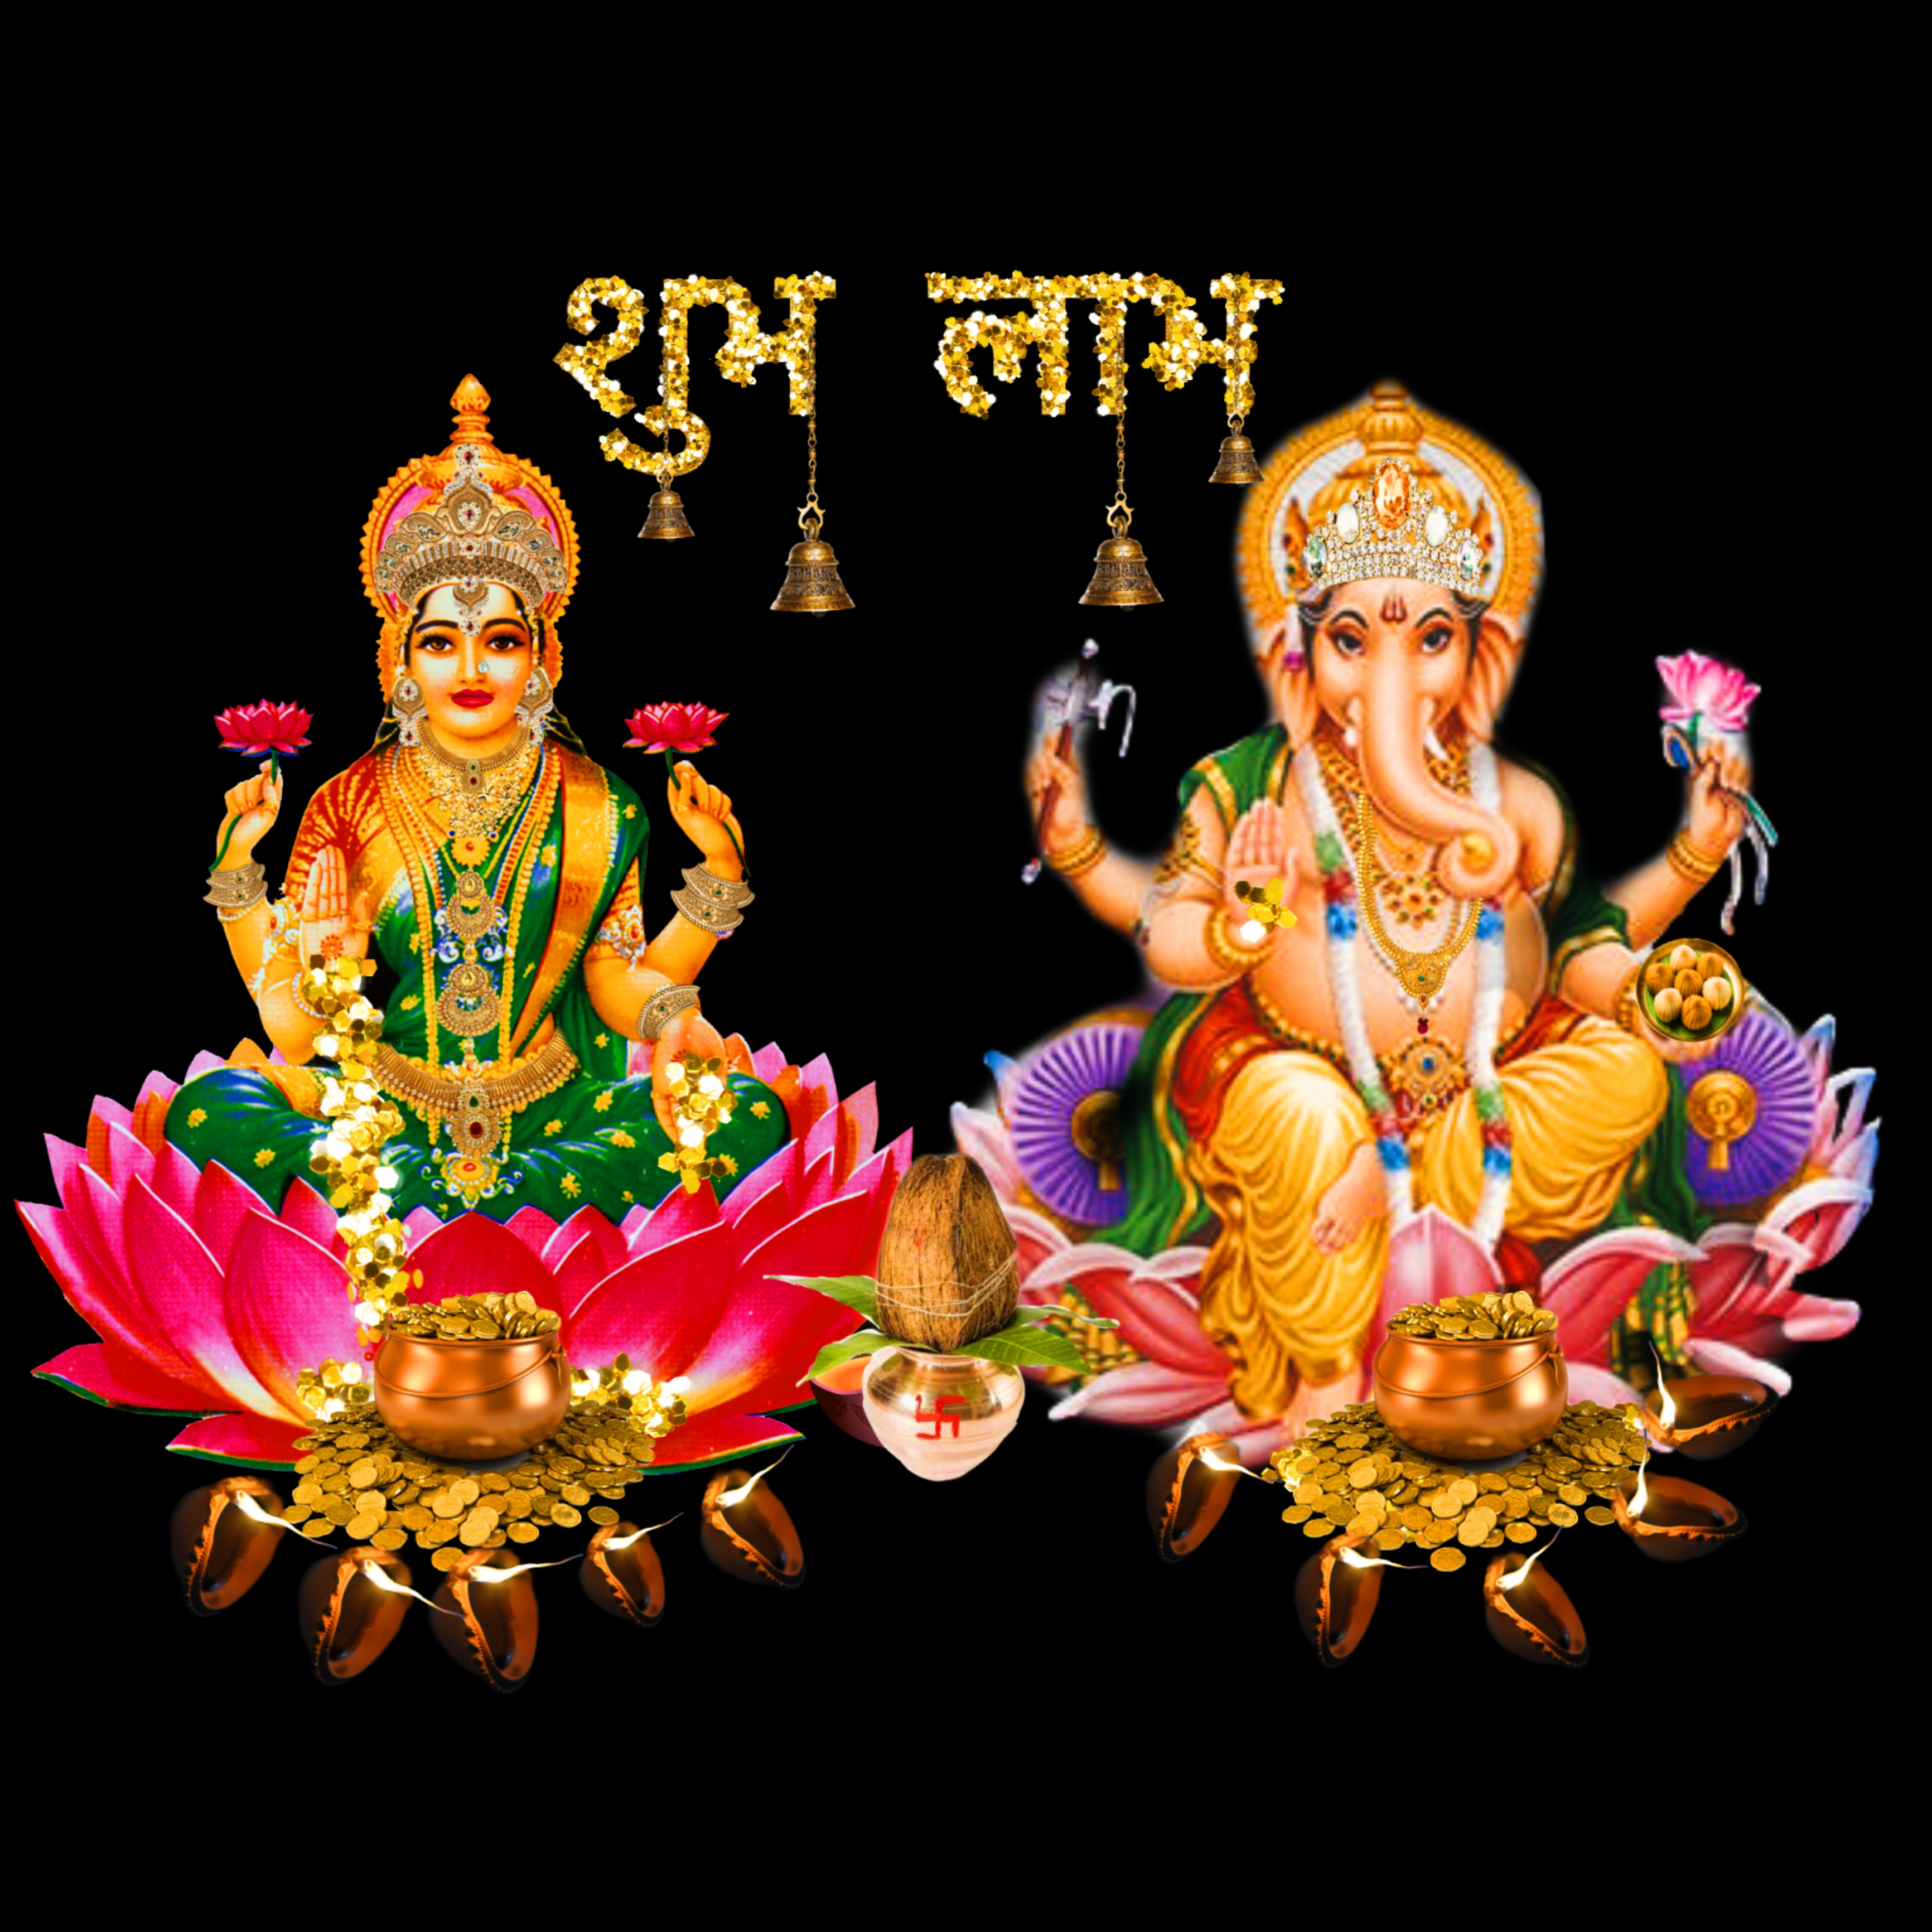 लक्ष्मी और गणेश जी की फोटो | Laxmi Ganesh ji Photo image wallpaper